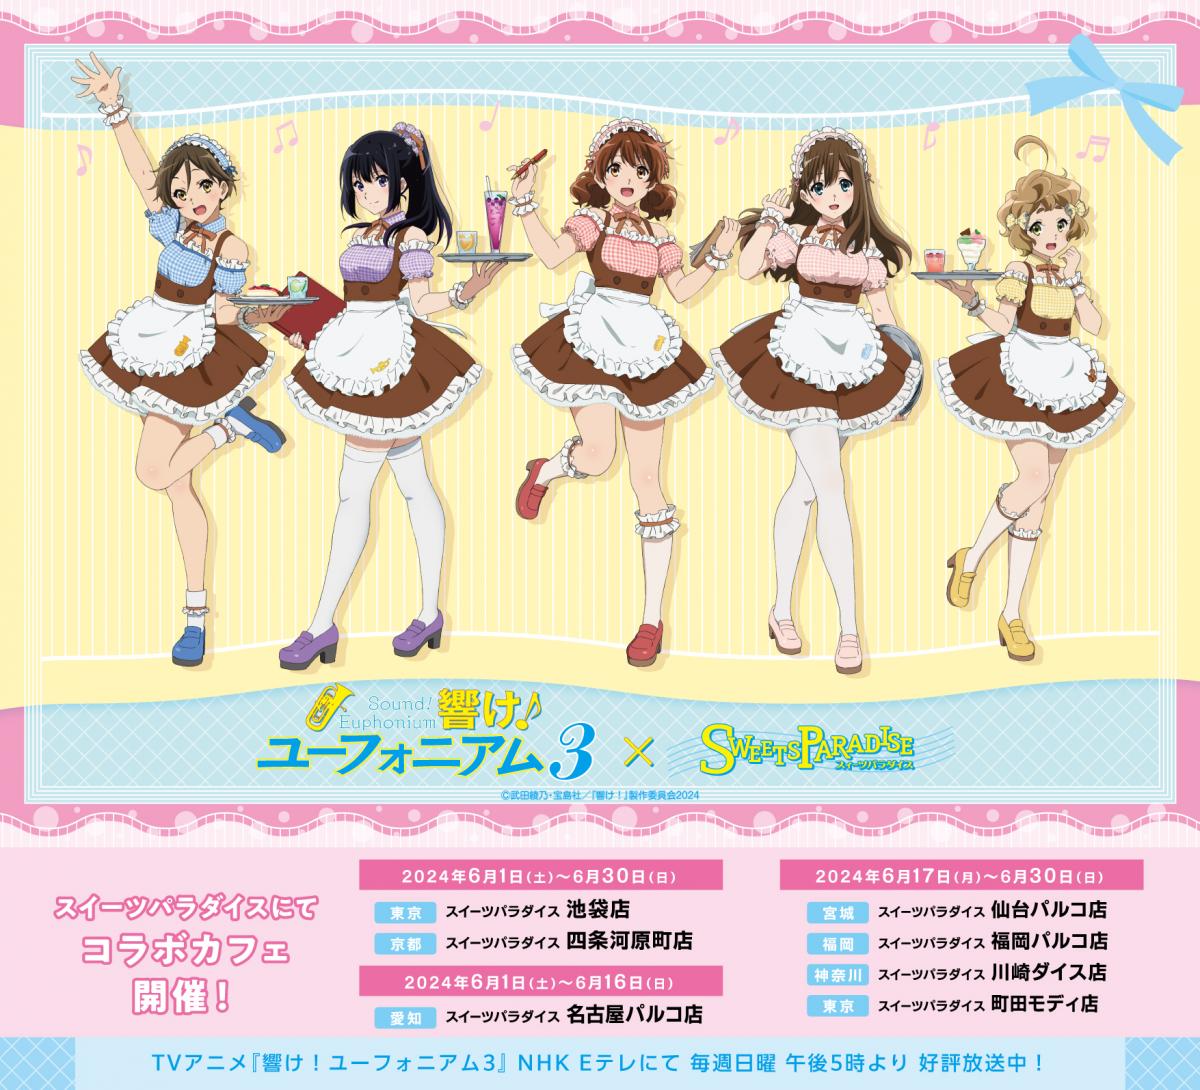 Anime truyền hình "Sound! Euphonium 3" x quán cà phê hợp tác SWEETS PARADISE (Cửa hàng Nagoya Parco)